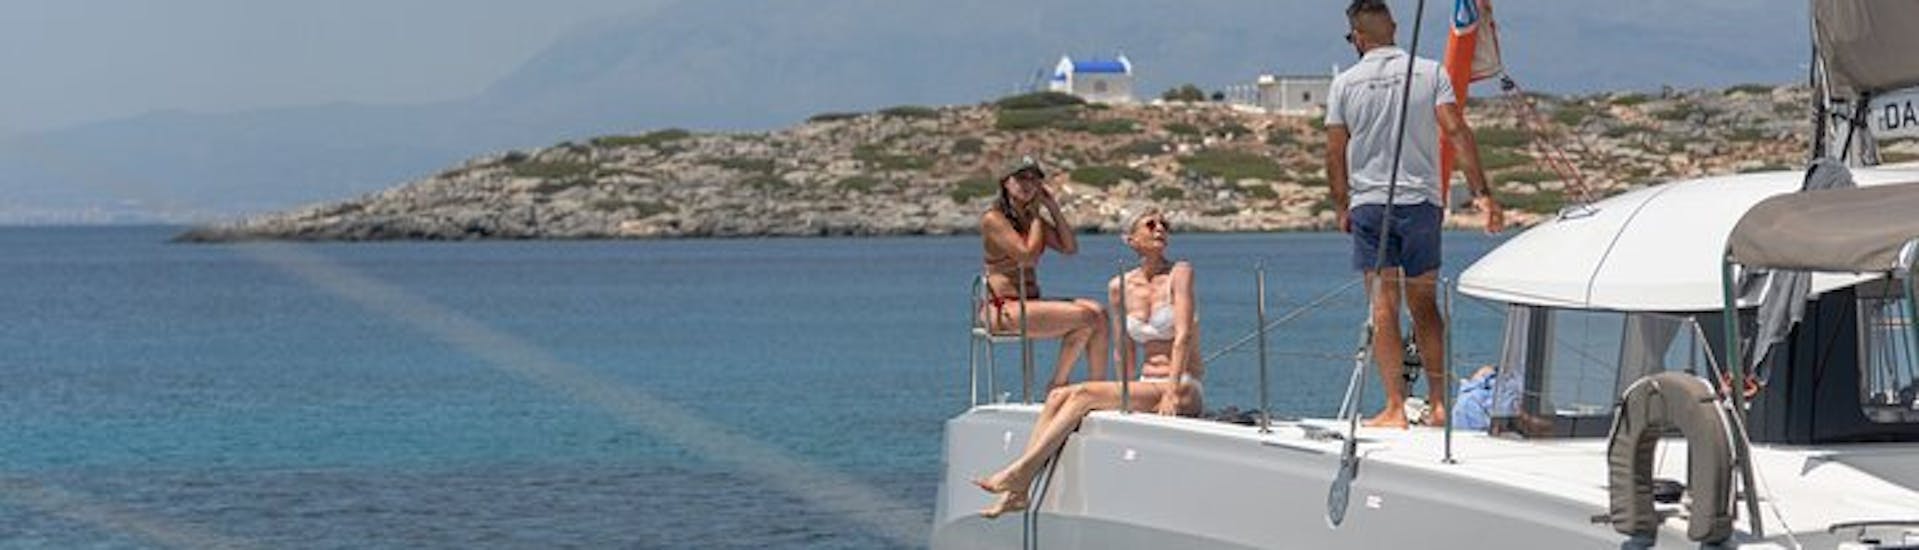 Gita in catamarano - giornata intera all'isola di Dia da Heraklion.